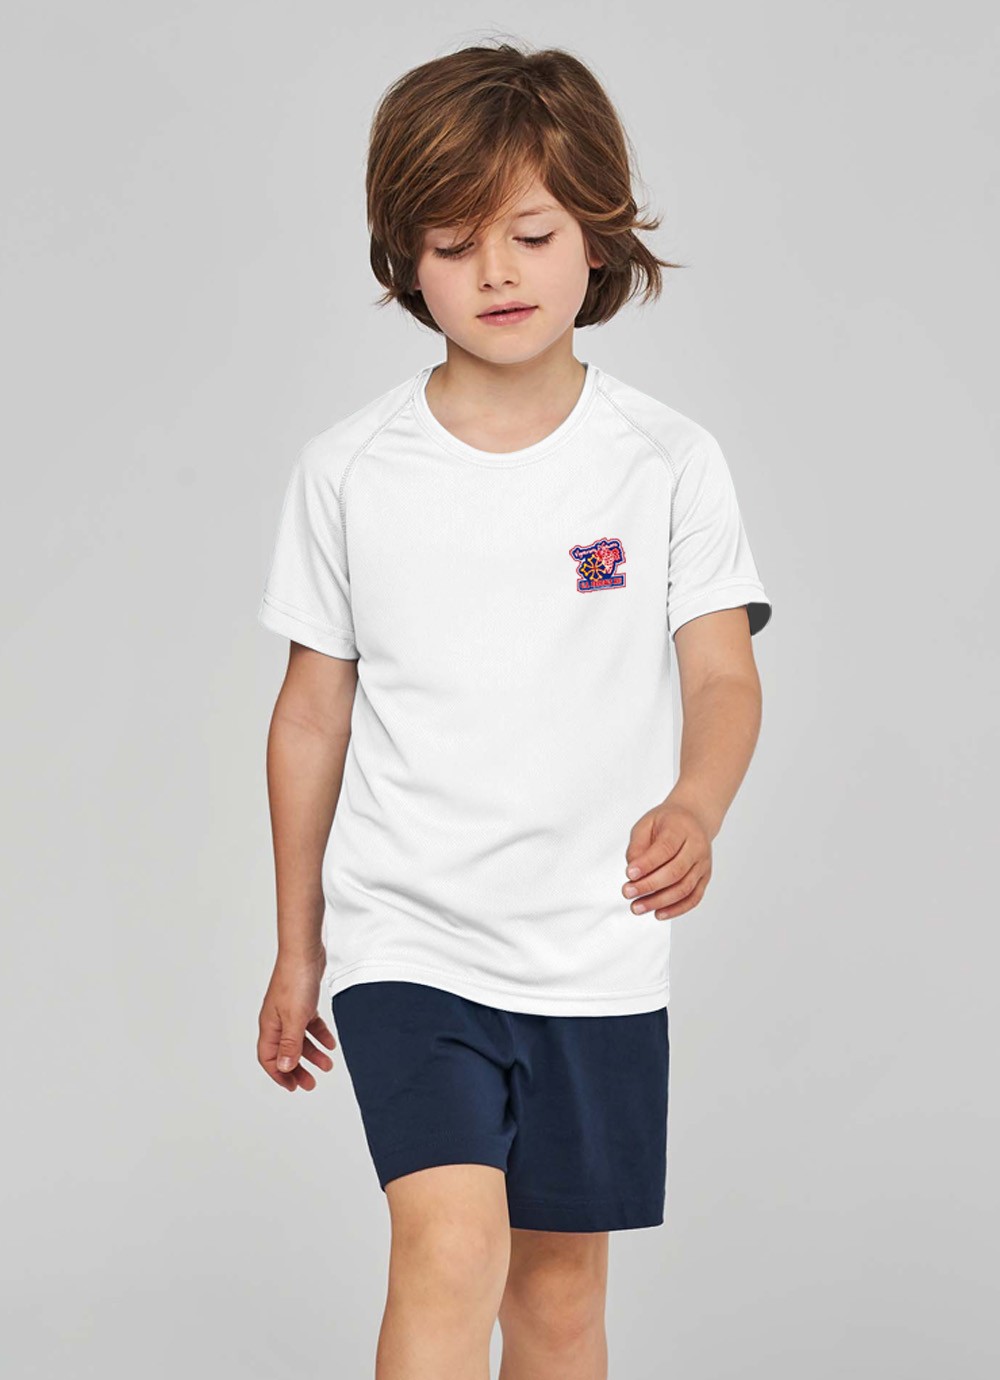 Tshirt sport enfant US Ferrals XIII blanc